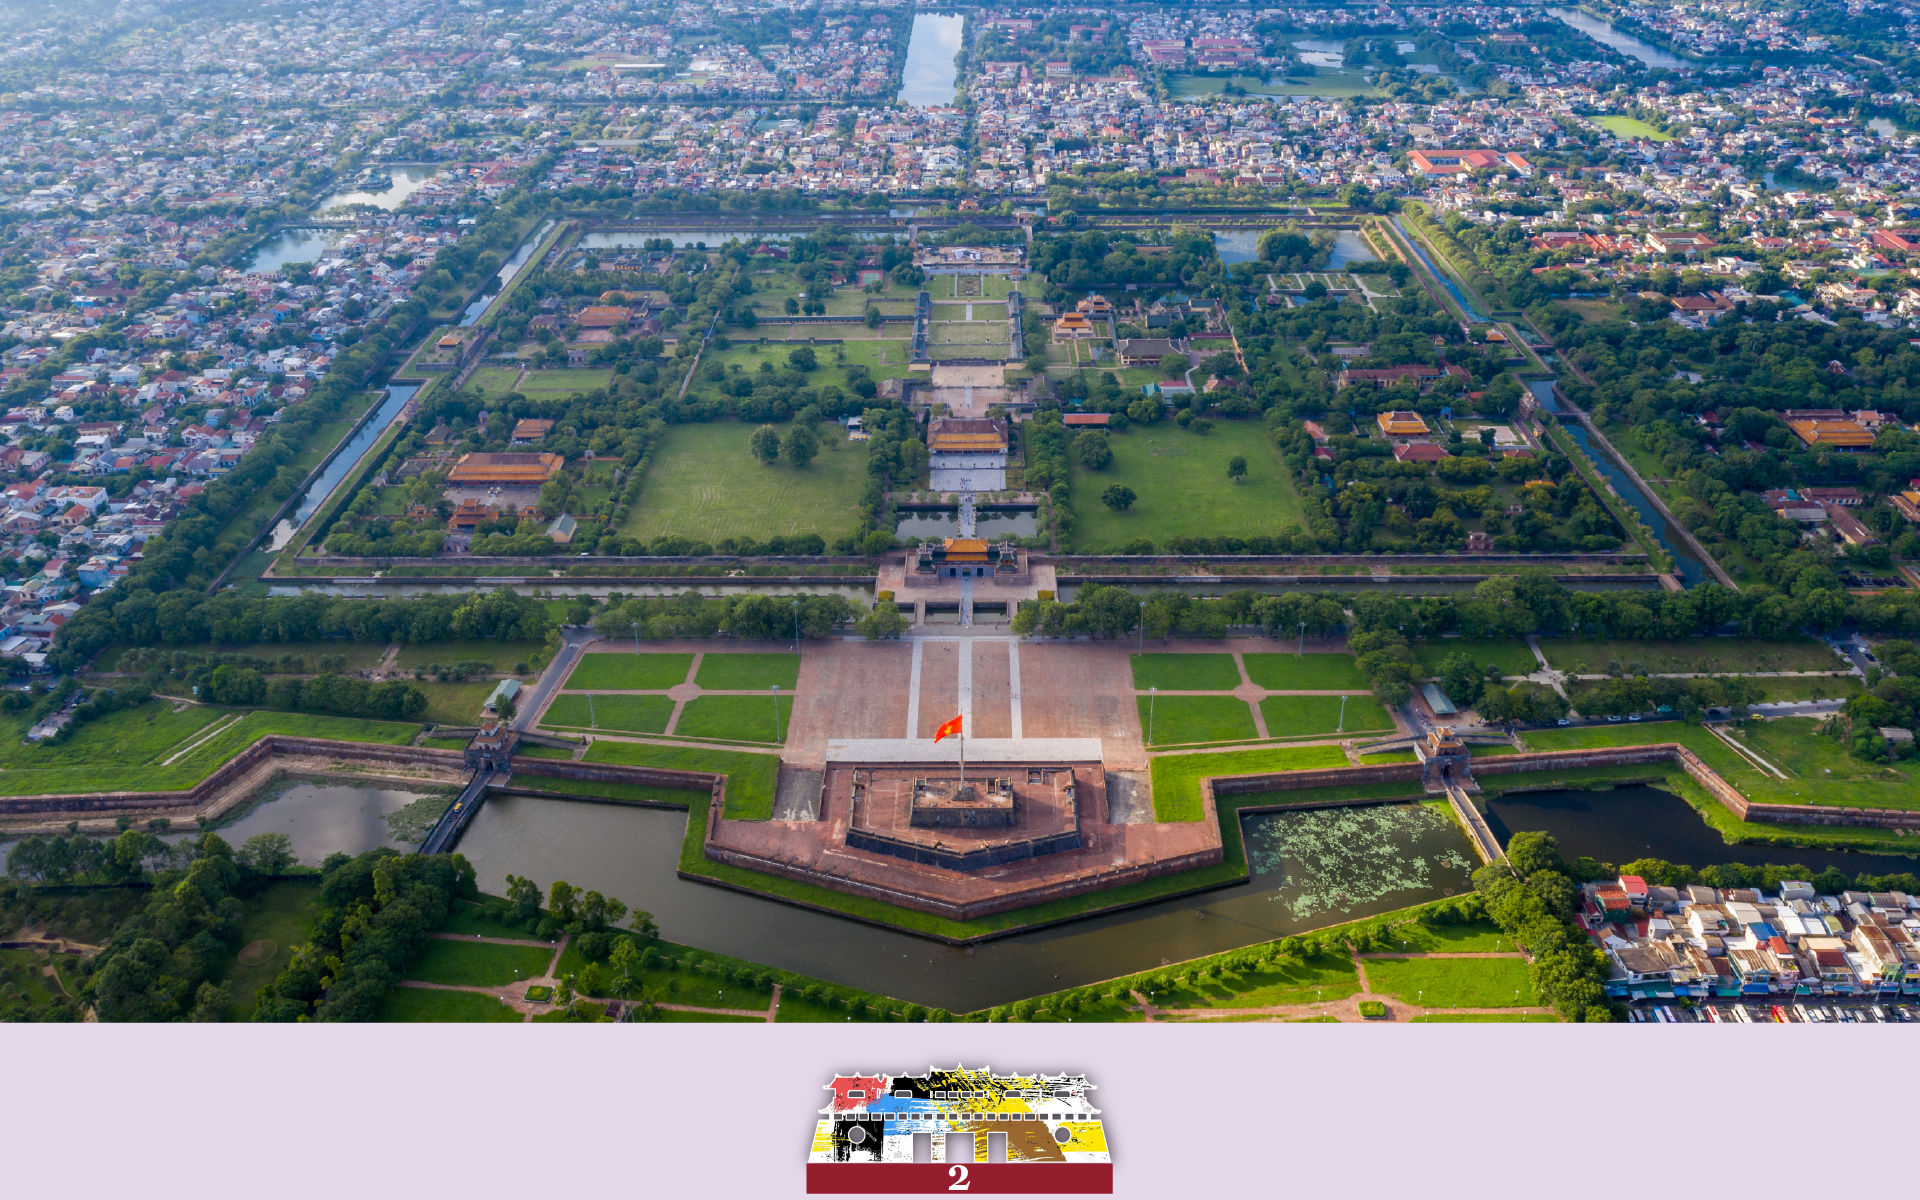 Nỗ lực “nâng” Thừa Thiên - Huế trở thành Thành phố di sản và hiện đại - Ảnh 3